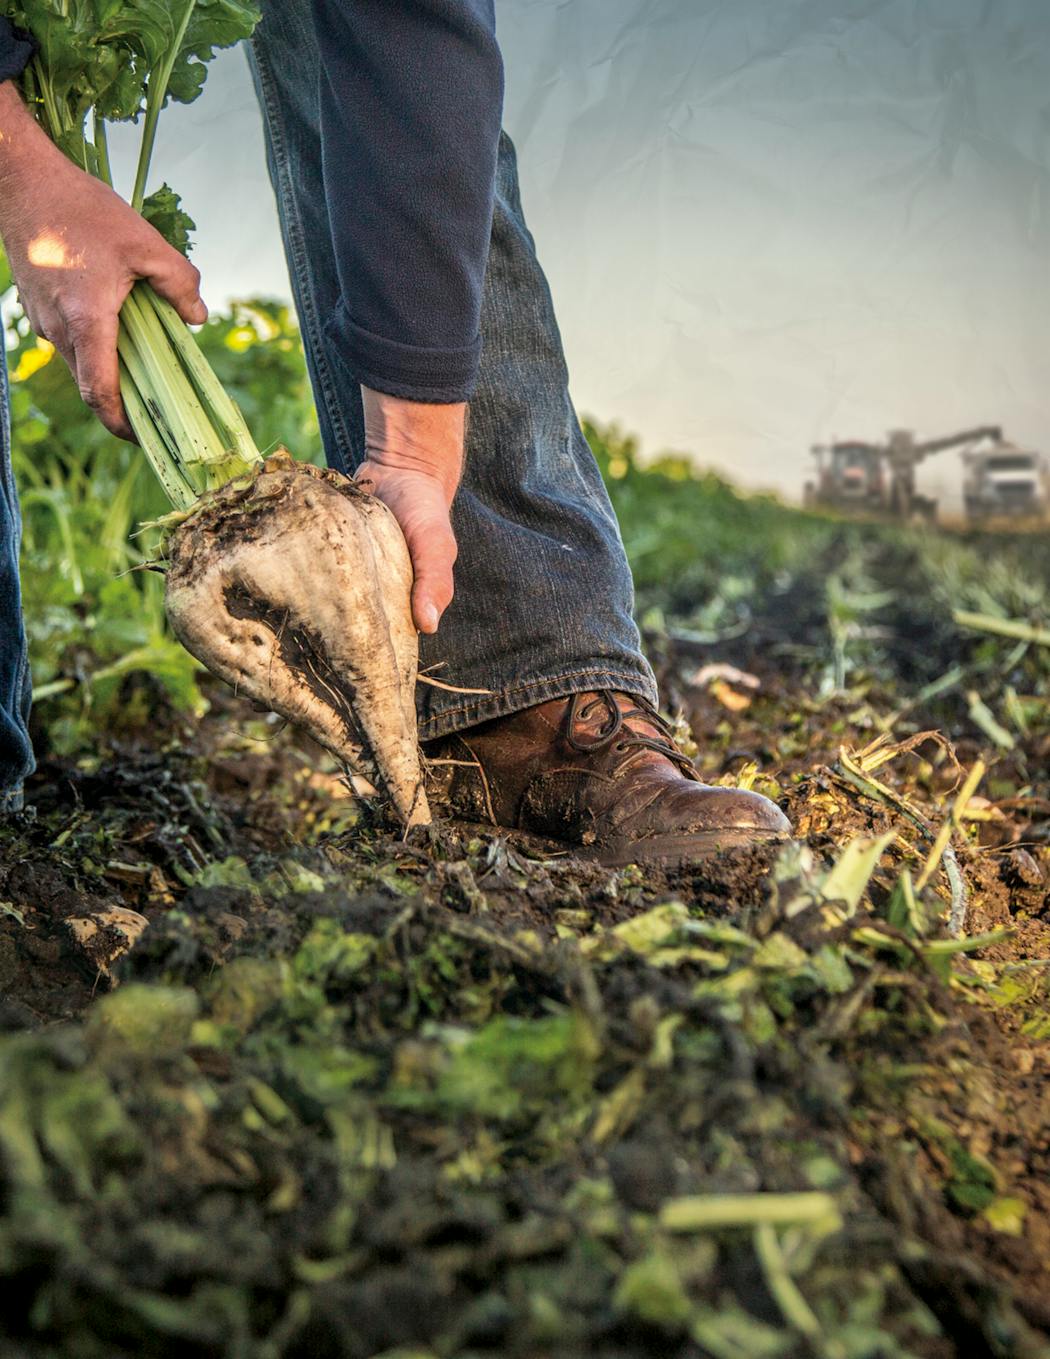 An American Crystal Sugar grower harvests a sugar beet.